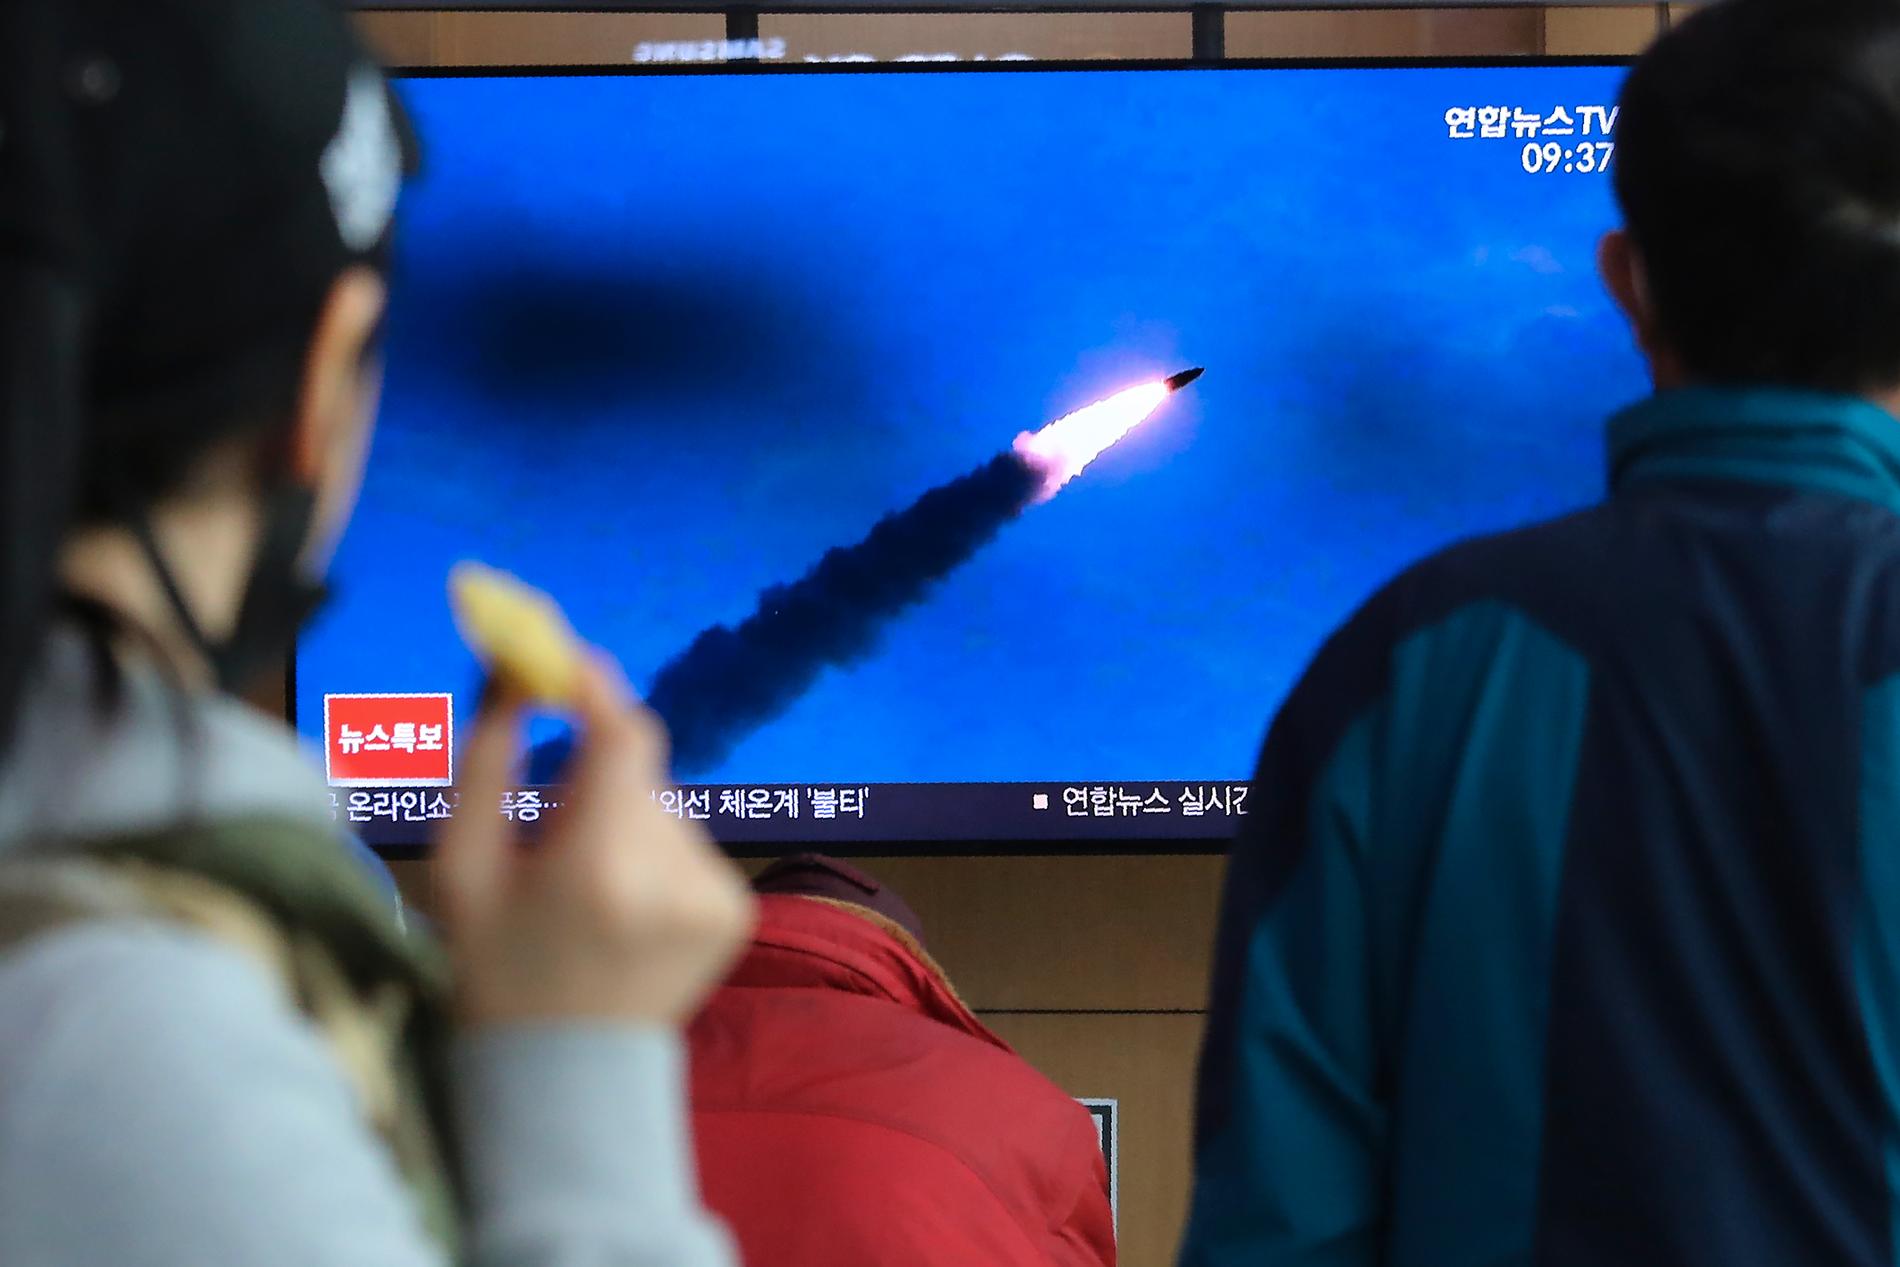 Sydkoreaner följer en nyhetssändning den 21 mars då Nordkorea avfyrade ballistiska kortdistansrobotar. Arkivbild.